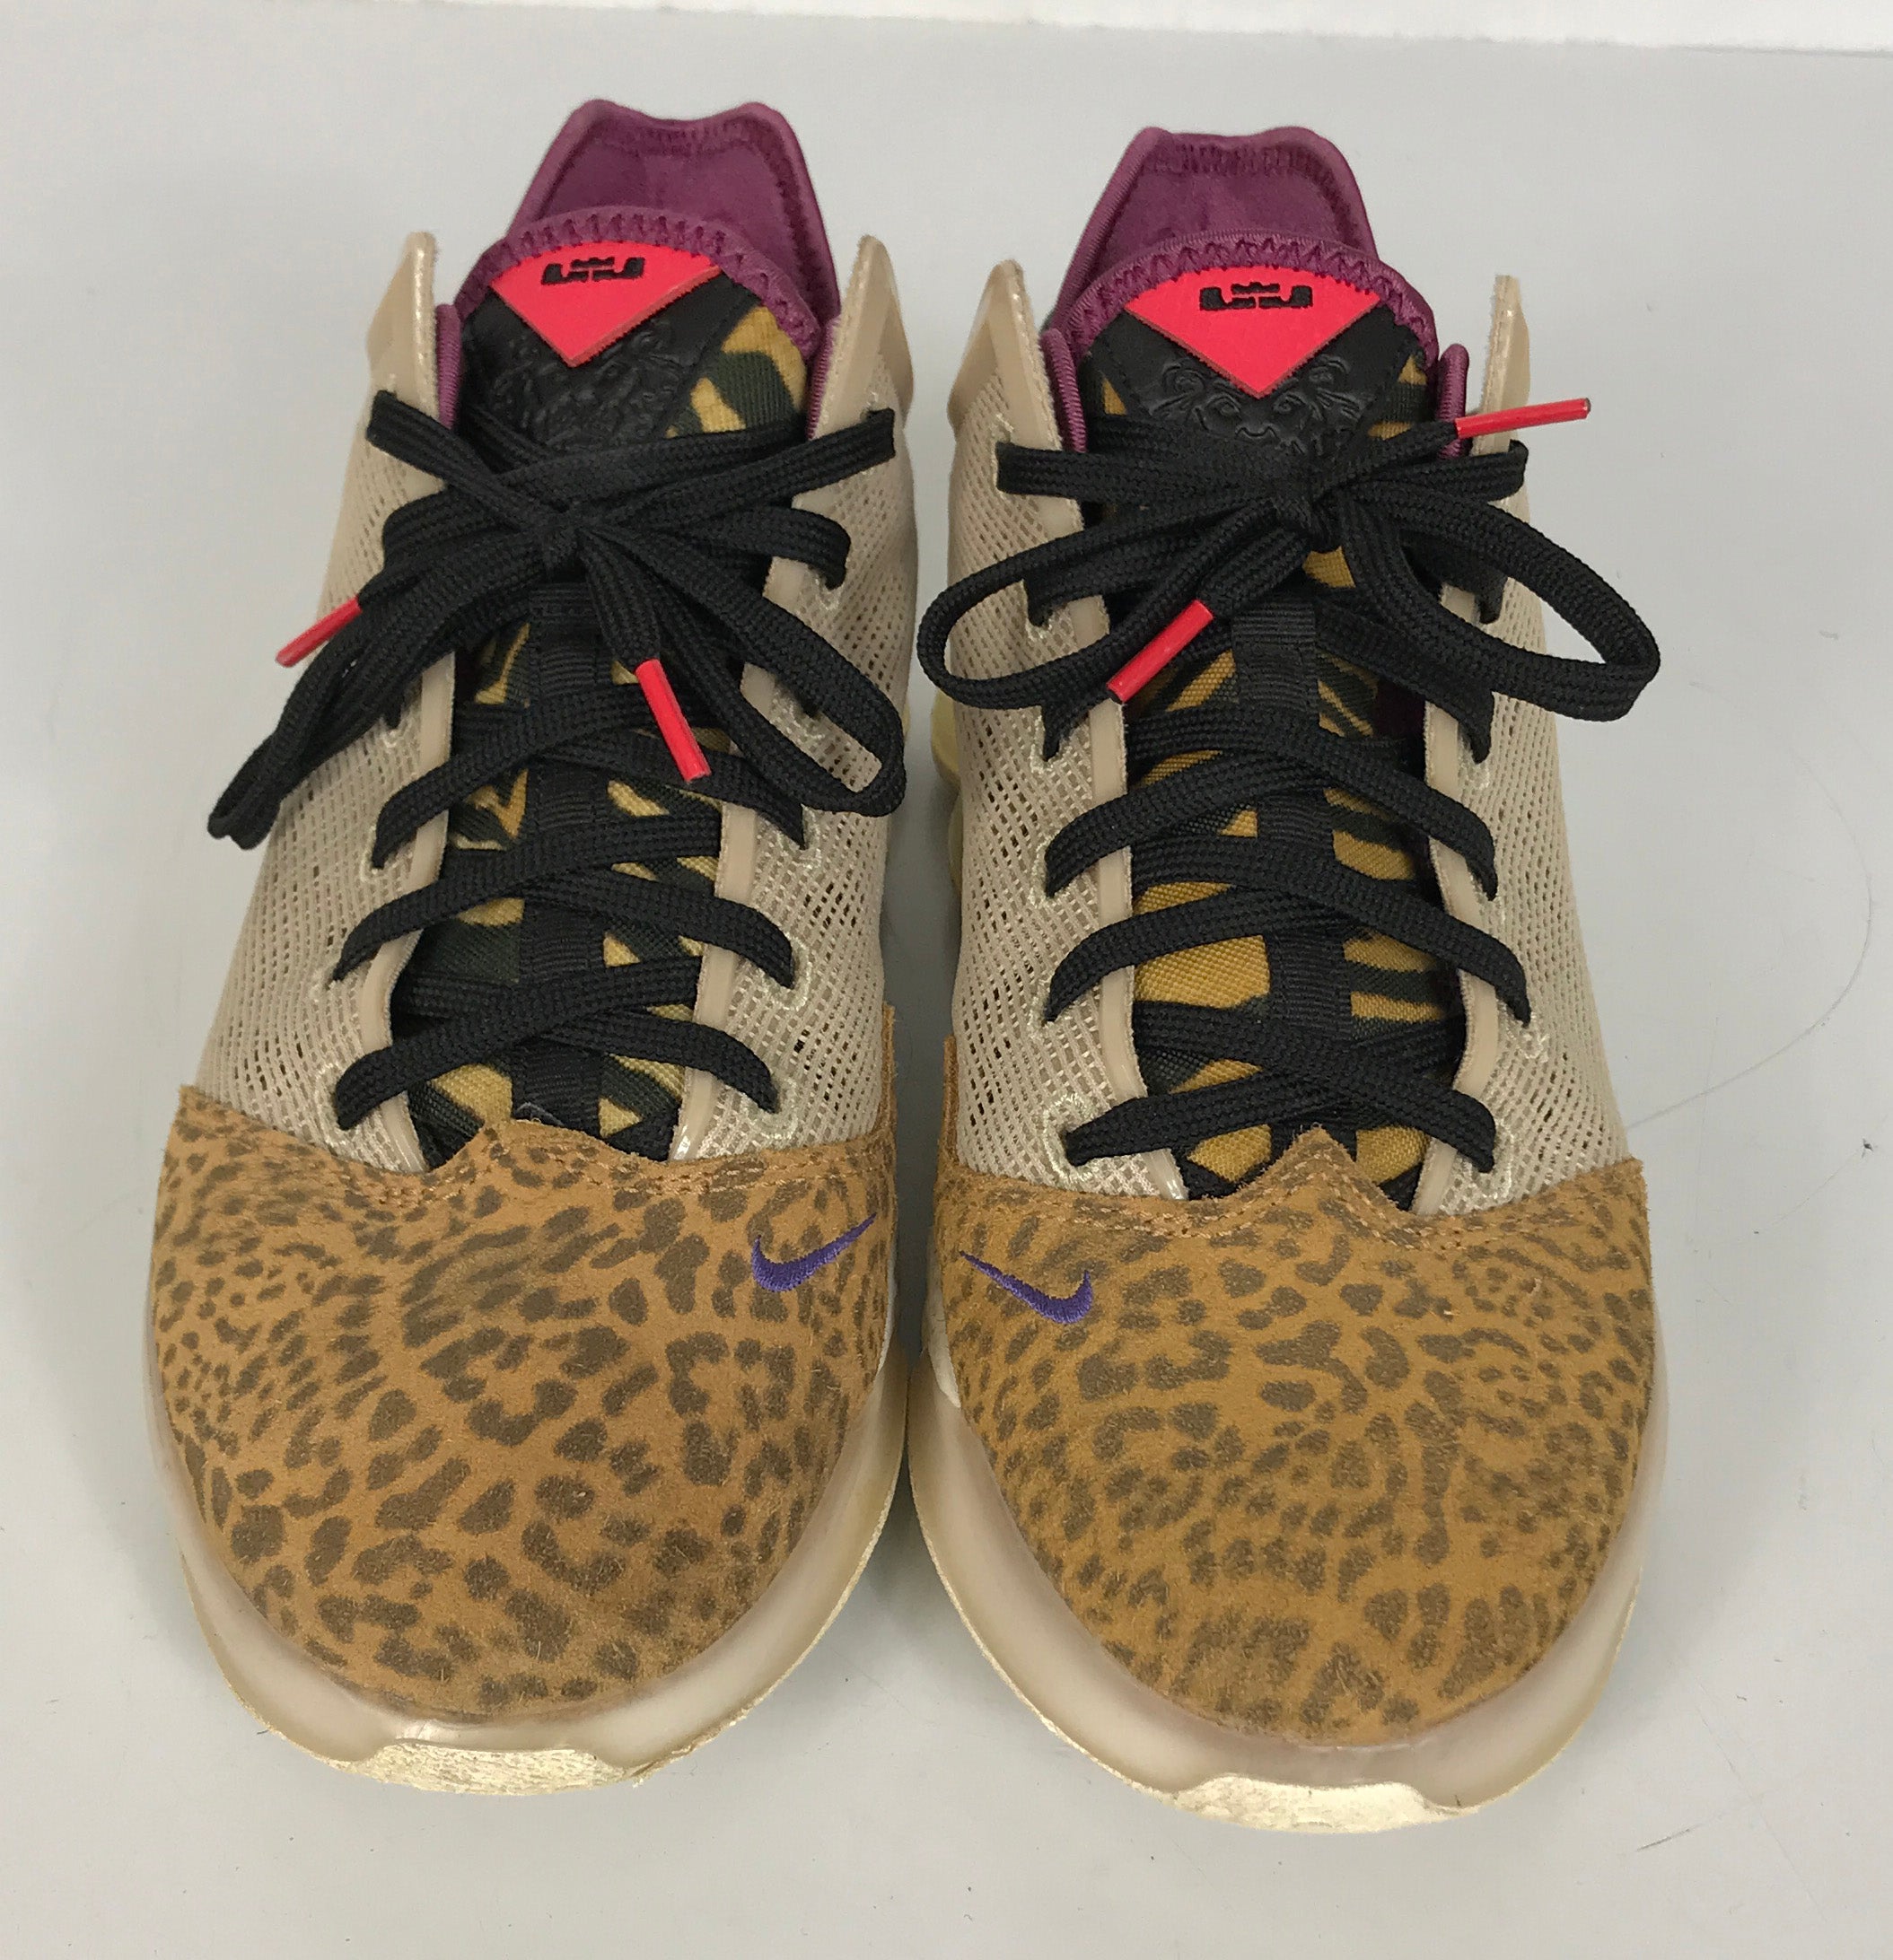 Nike LeBron XIX 19 Low Safari Animal Print Basketball Shoes Men's Size 8